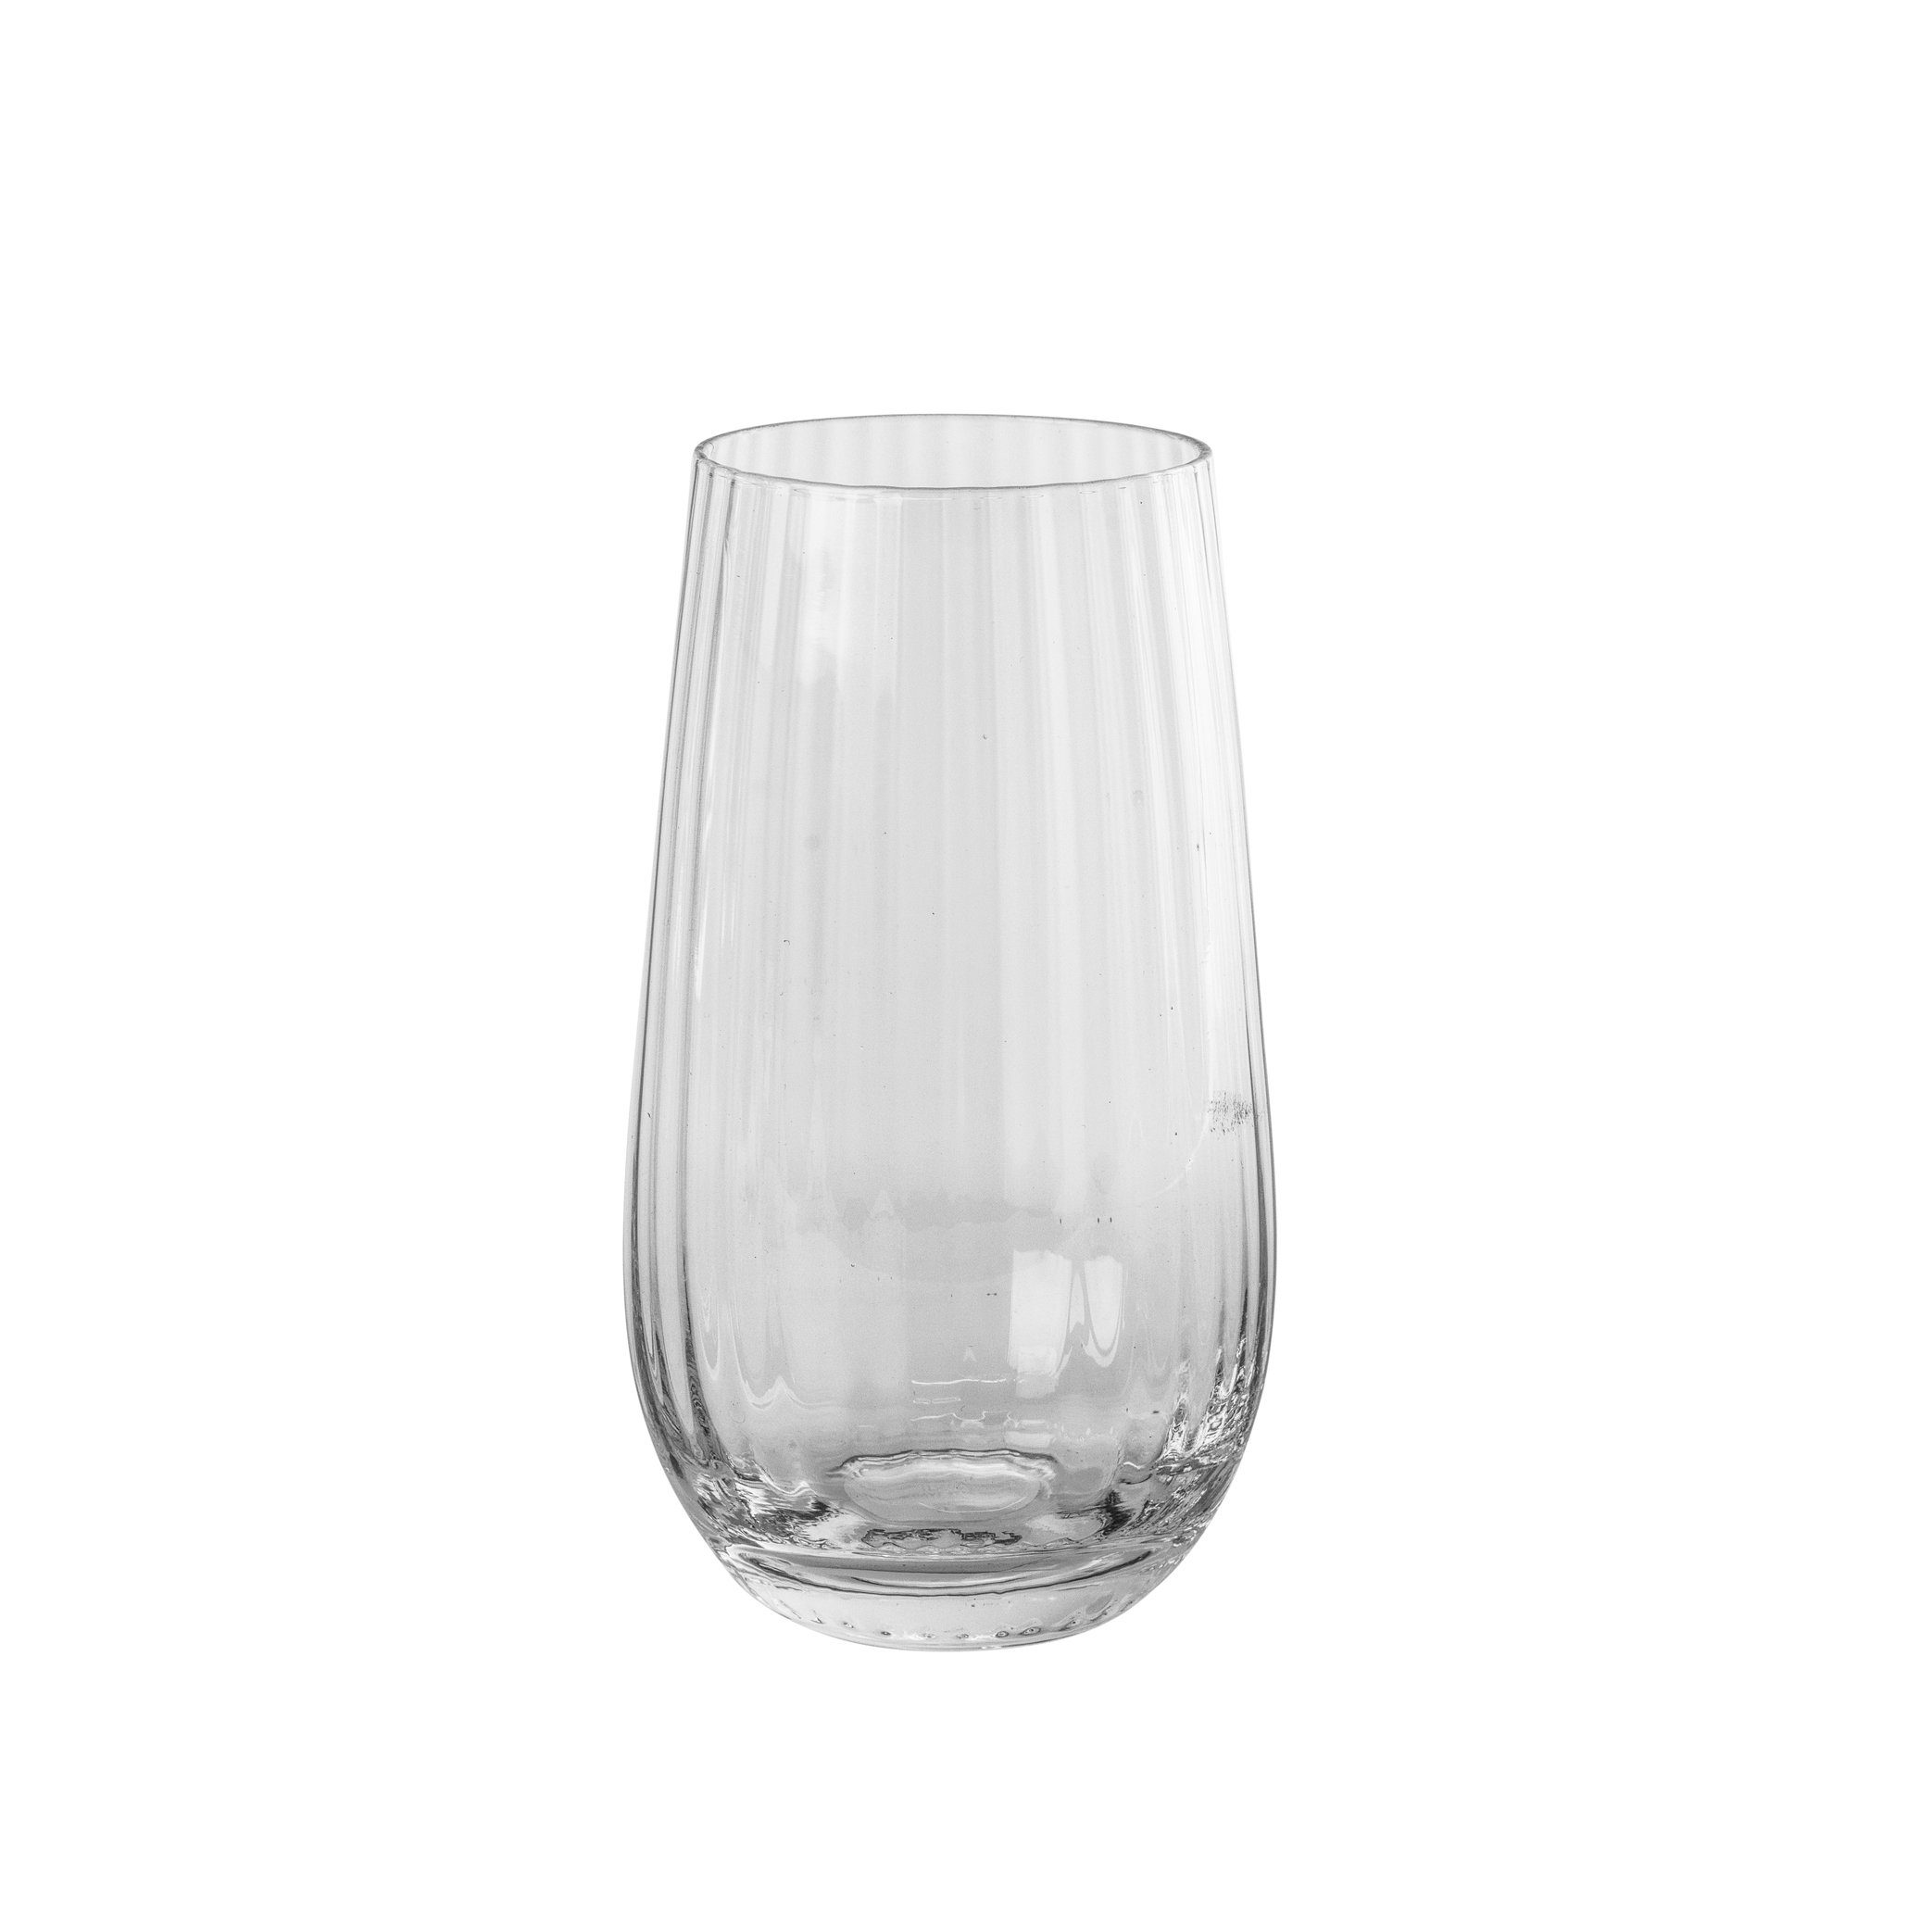 Sandvig Trinkglas Copenhagen Copenhagen Glas broste mit Broste Rillen